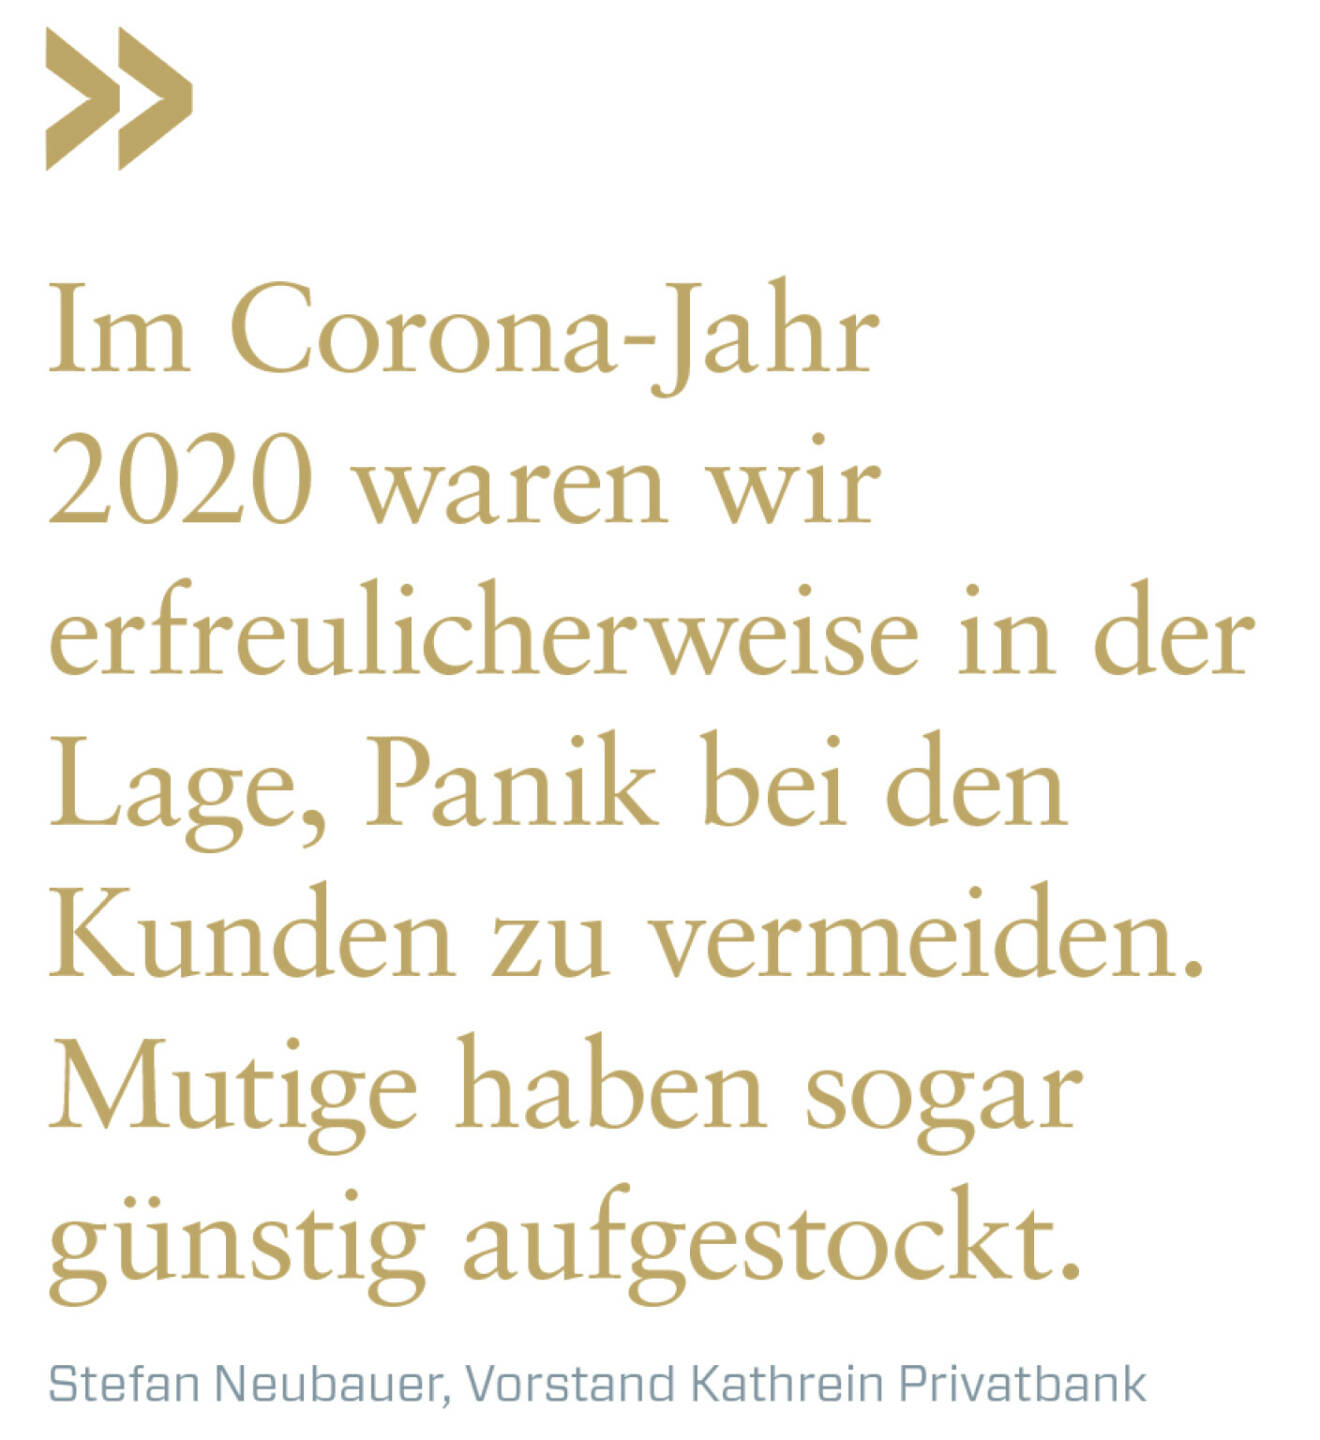 Im Corona-Jahr 2020 waren wir erfreulicherweise in der Lage, Panik bei den Kunden zu vermeiden.  Mutige haben sogar günstig aufgestockt.
Stefan Neubauer, Vorstand Kathrein Privatbank 